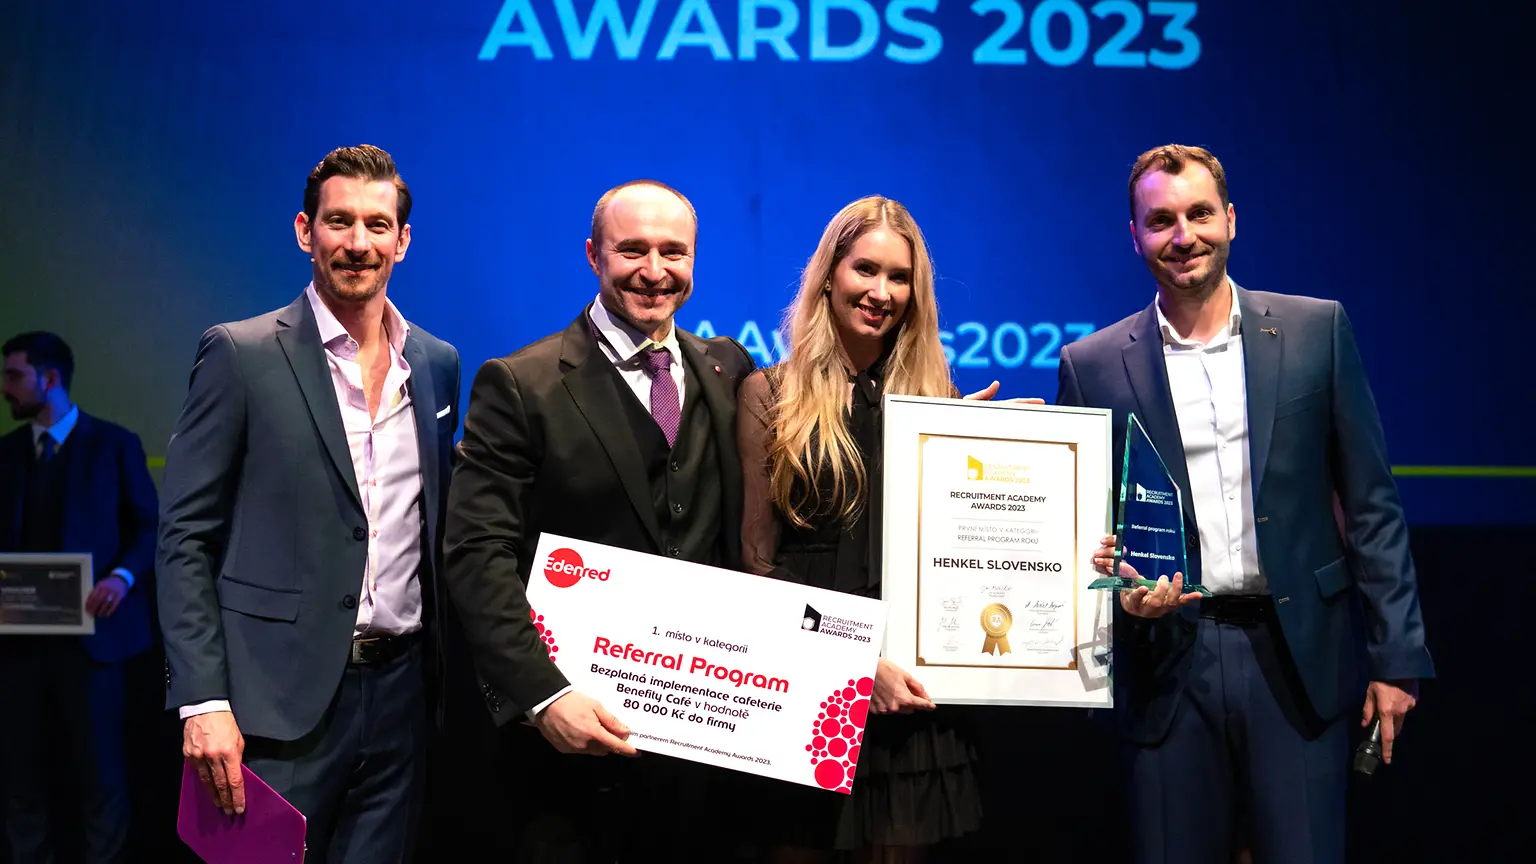 Spoločnosť Henkel Slovensko sa umiestnila na 1. mieste súťaže Recruitment Academy Awards v kategórii Referral program roku.